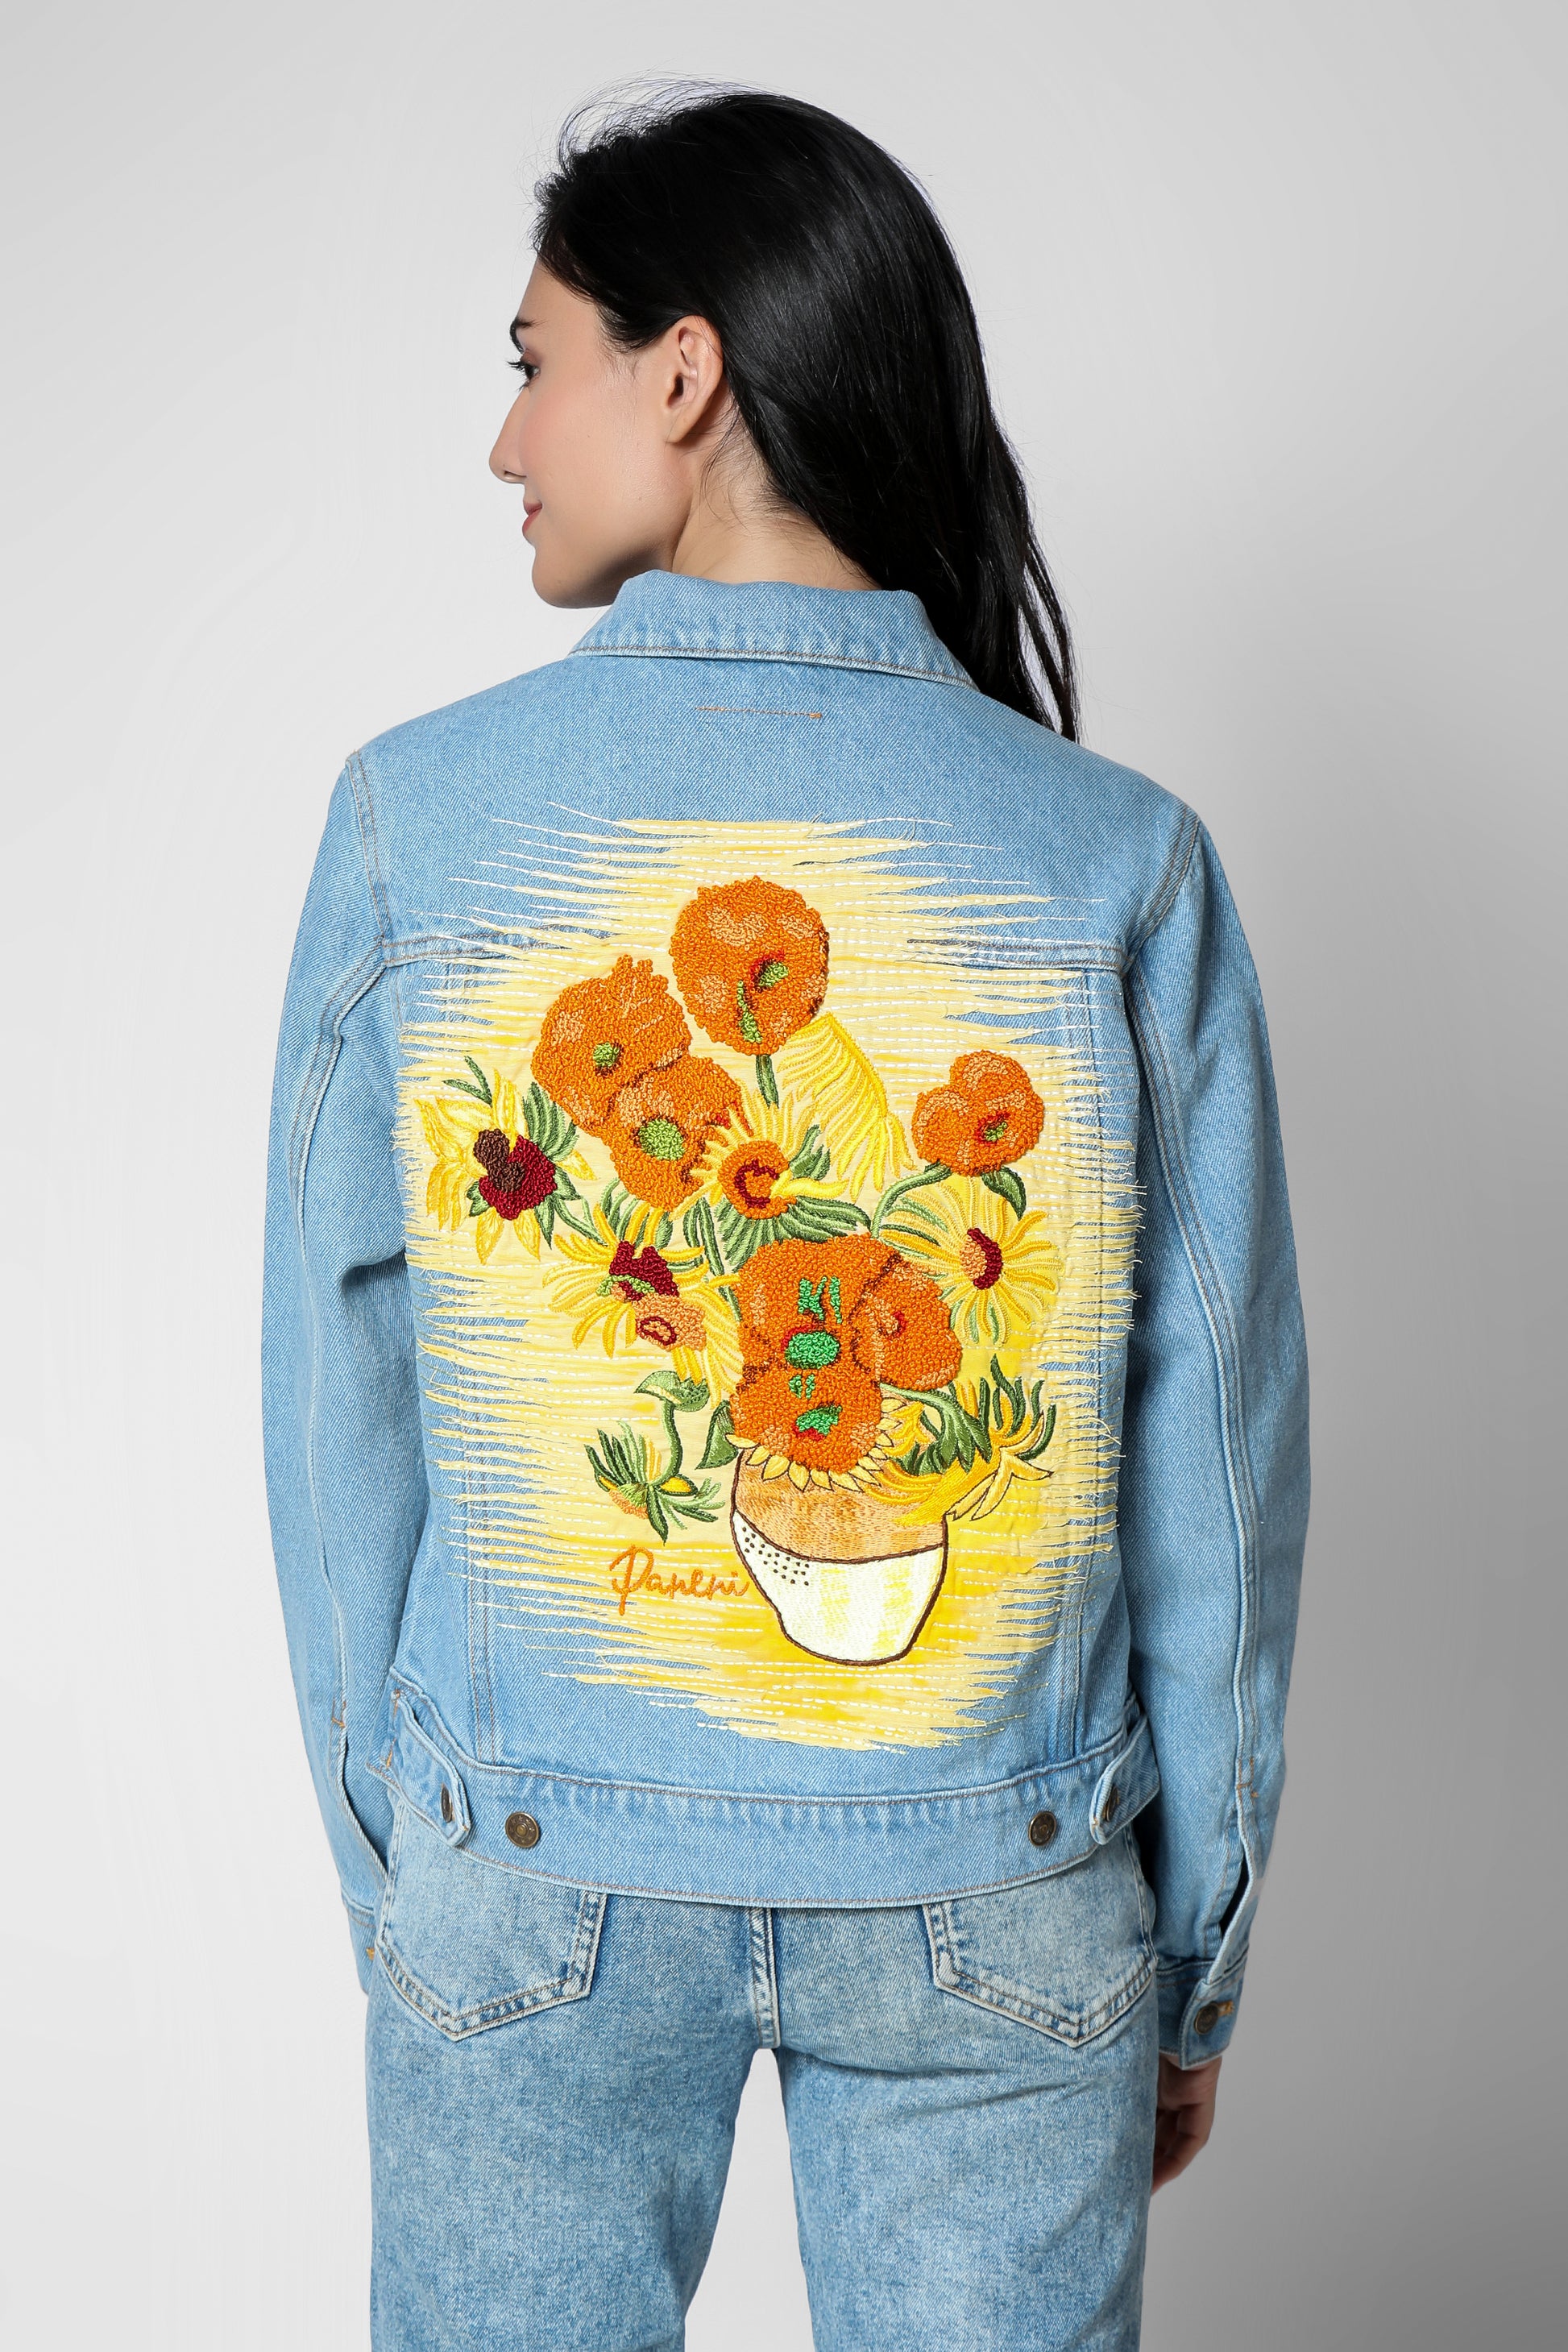 Sunflowers Denim Jacket Hand-Embroidered Denim Jacket, Embroidered Jean  Jacket & Customise Denim Jacket, Red Denim Jacket